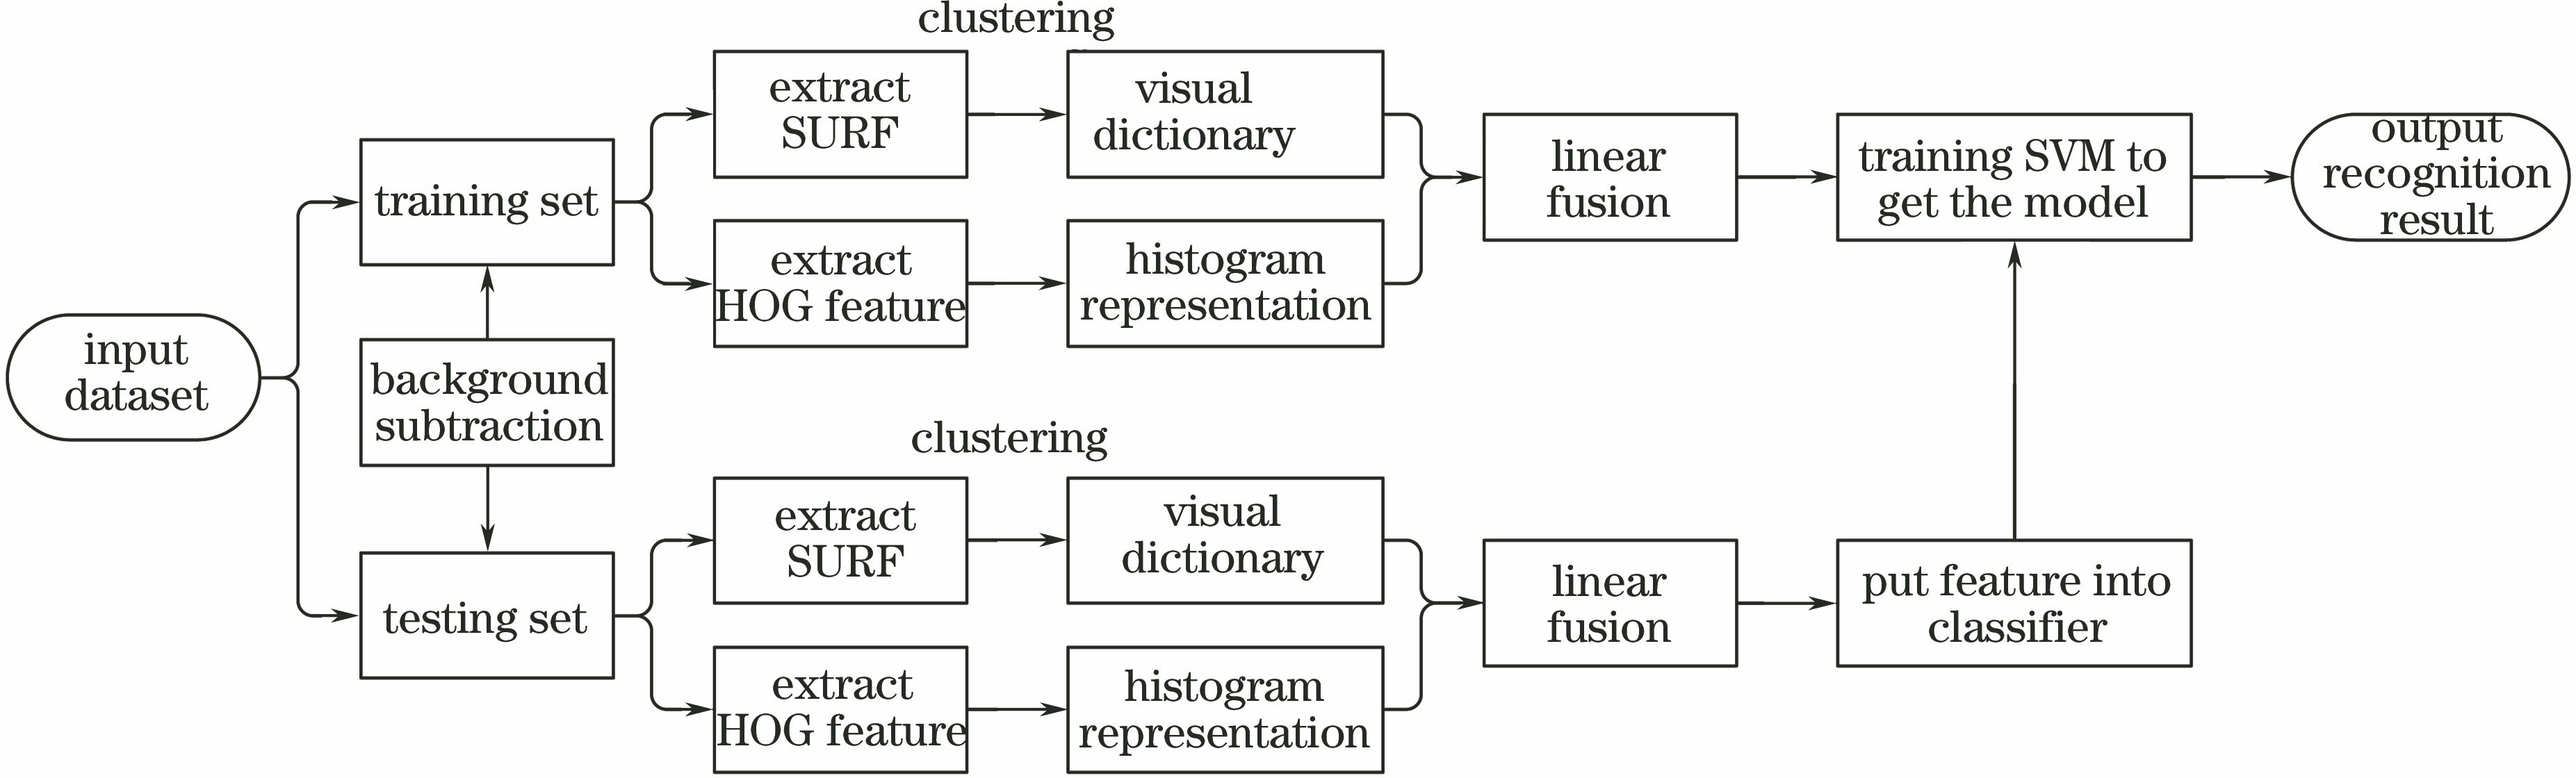 Flow chart of algorithm